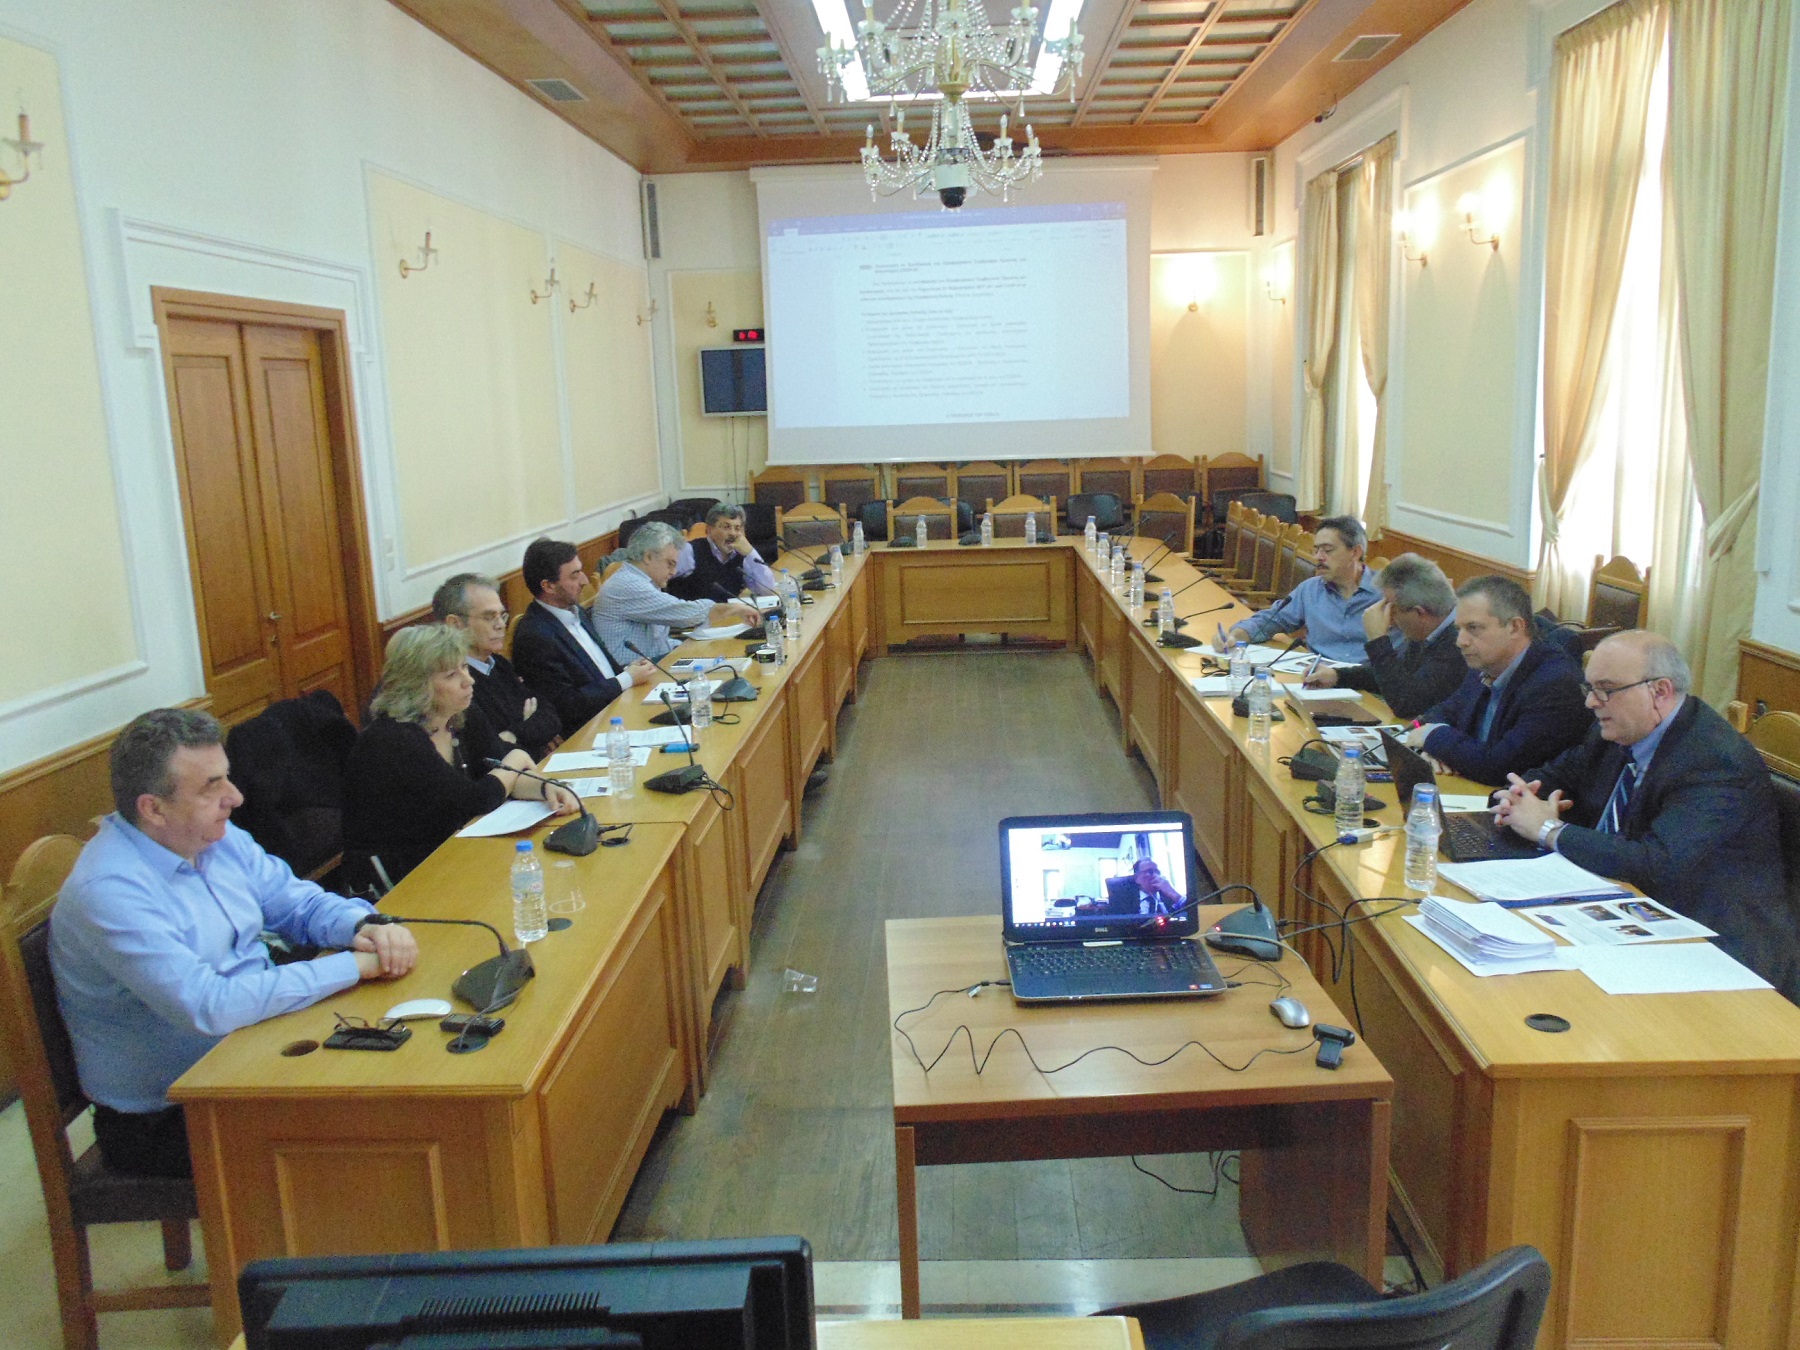 Η στρατηγική αντιμετώπισης των προκλήσεων στην έρευνα- Συνεδρίαση στην Περιφέρεια Κρήτης 